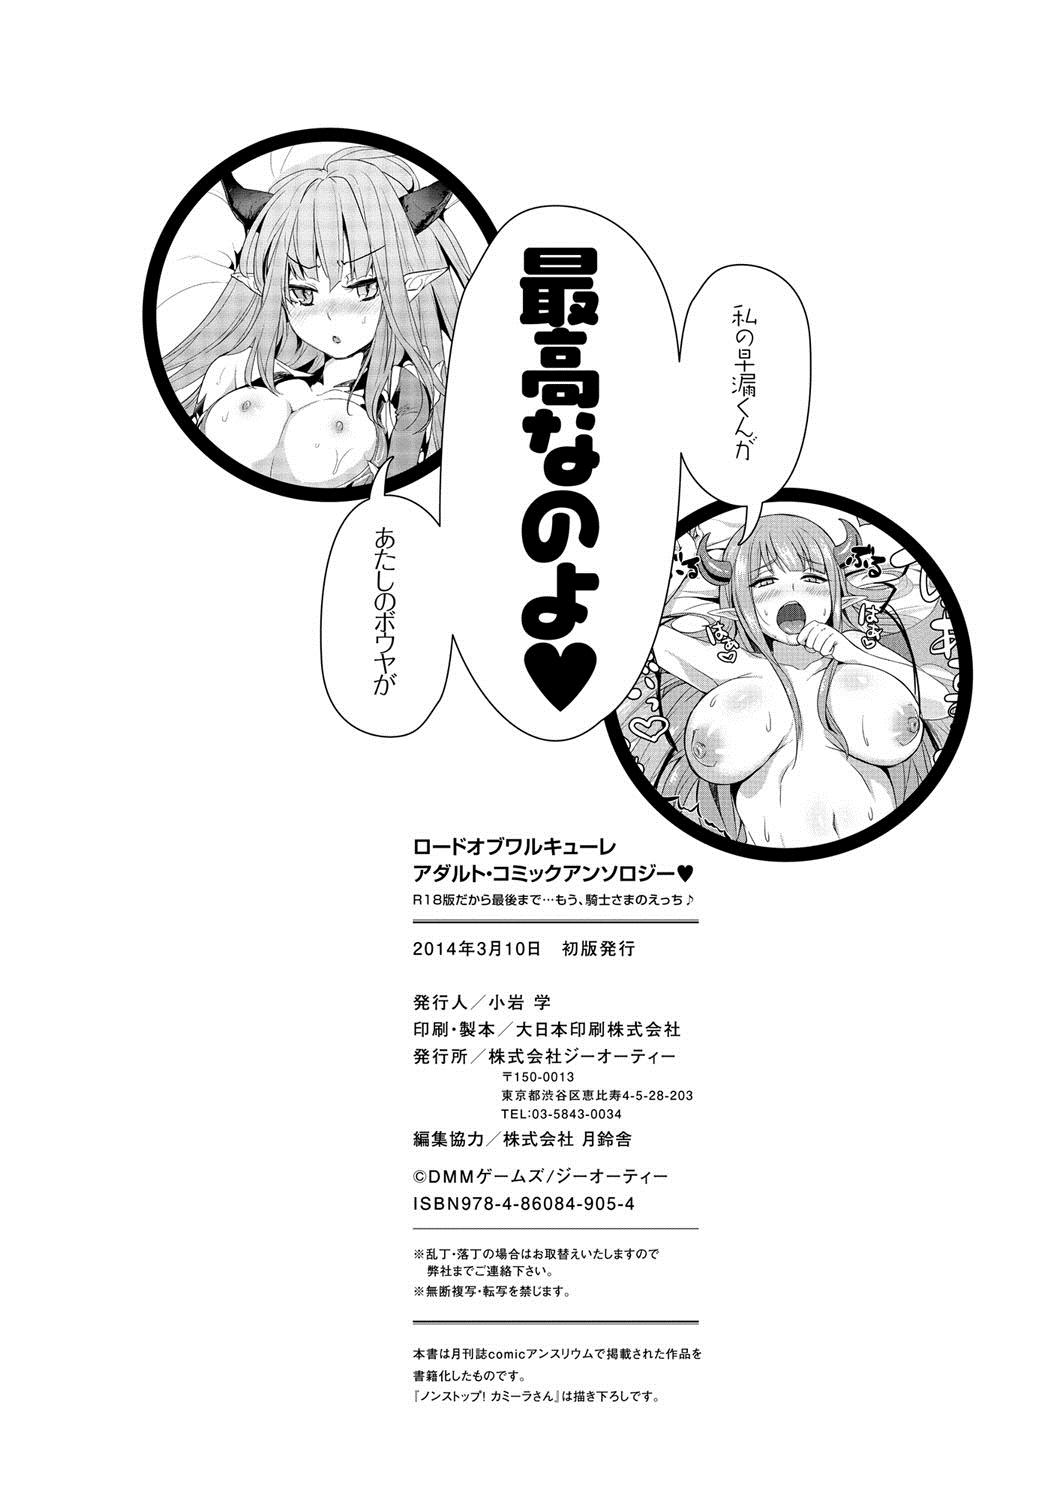 [Anthology] Lord of Valkyrie Adult - Comic Anthology R18 Handakara Saigomade... Mou, Kishi-sama no Ecchi♪ 132